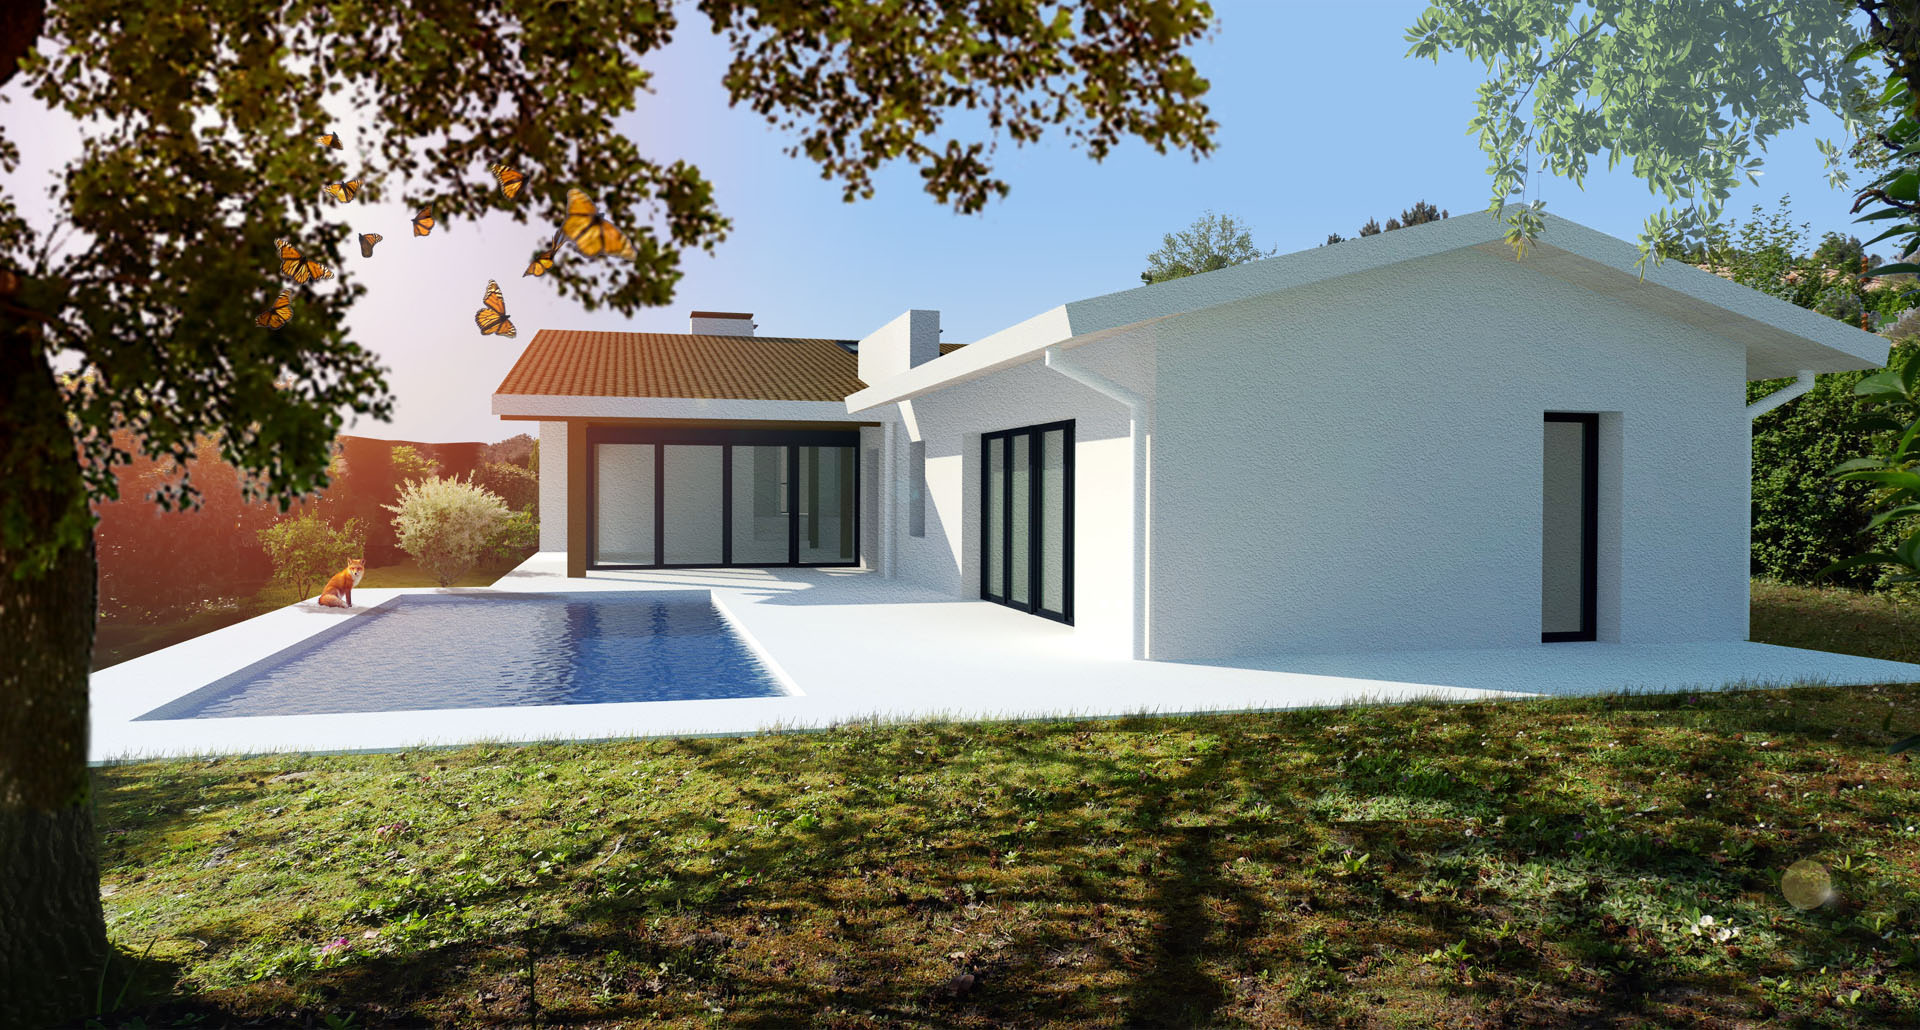 extension de maison à Mérignac Rodde-Aragues architectes - vue 3D